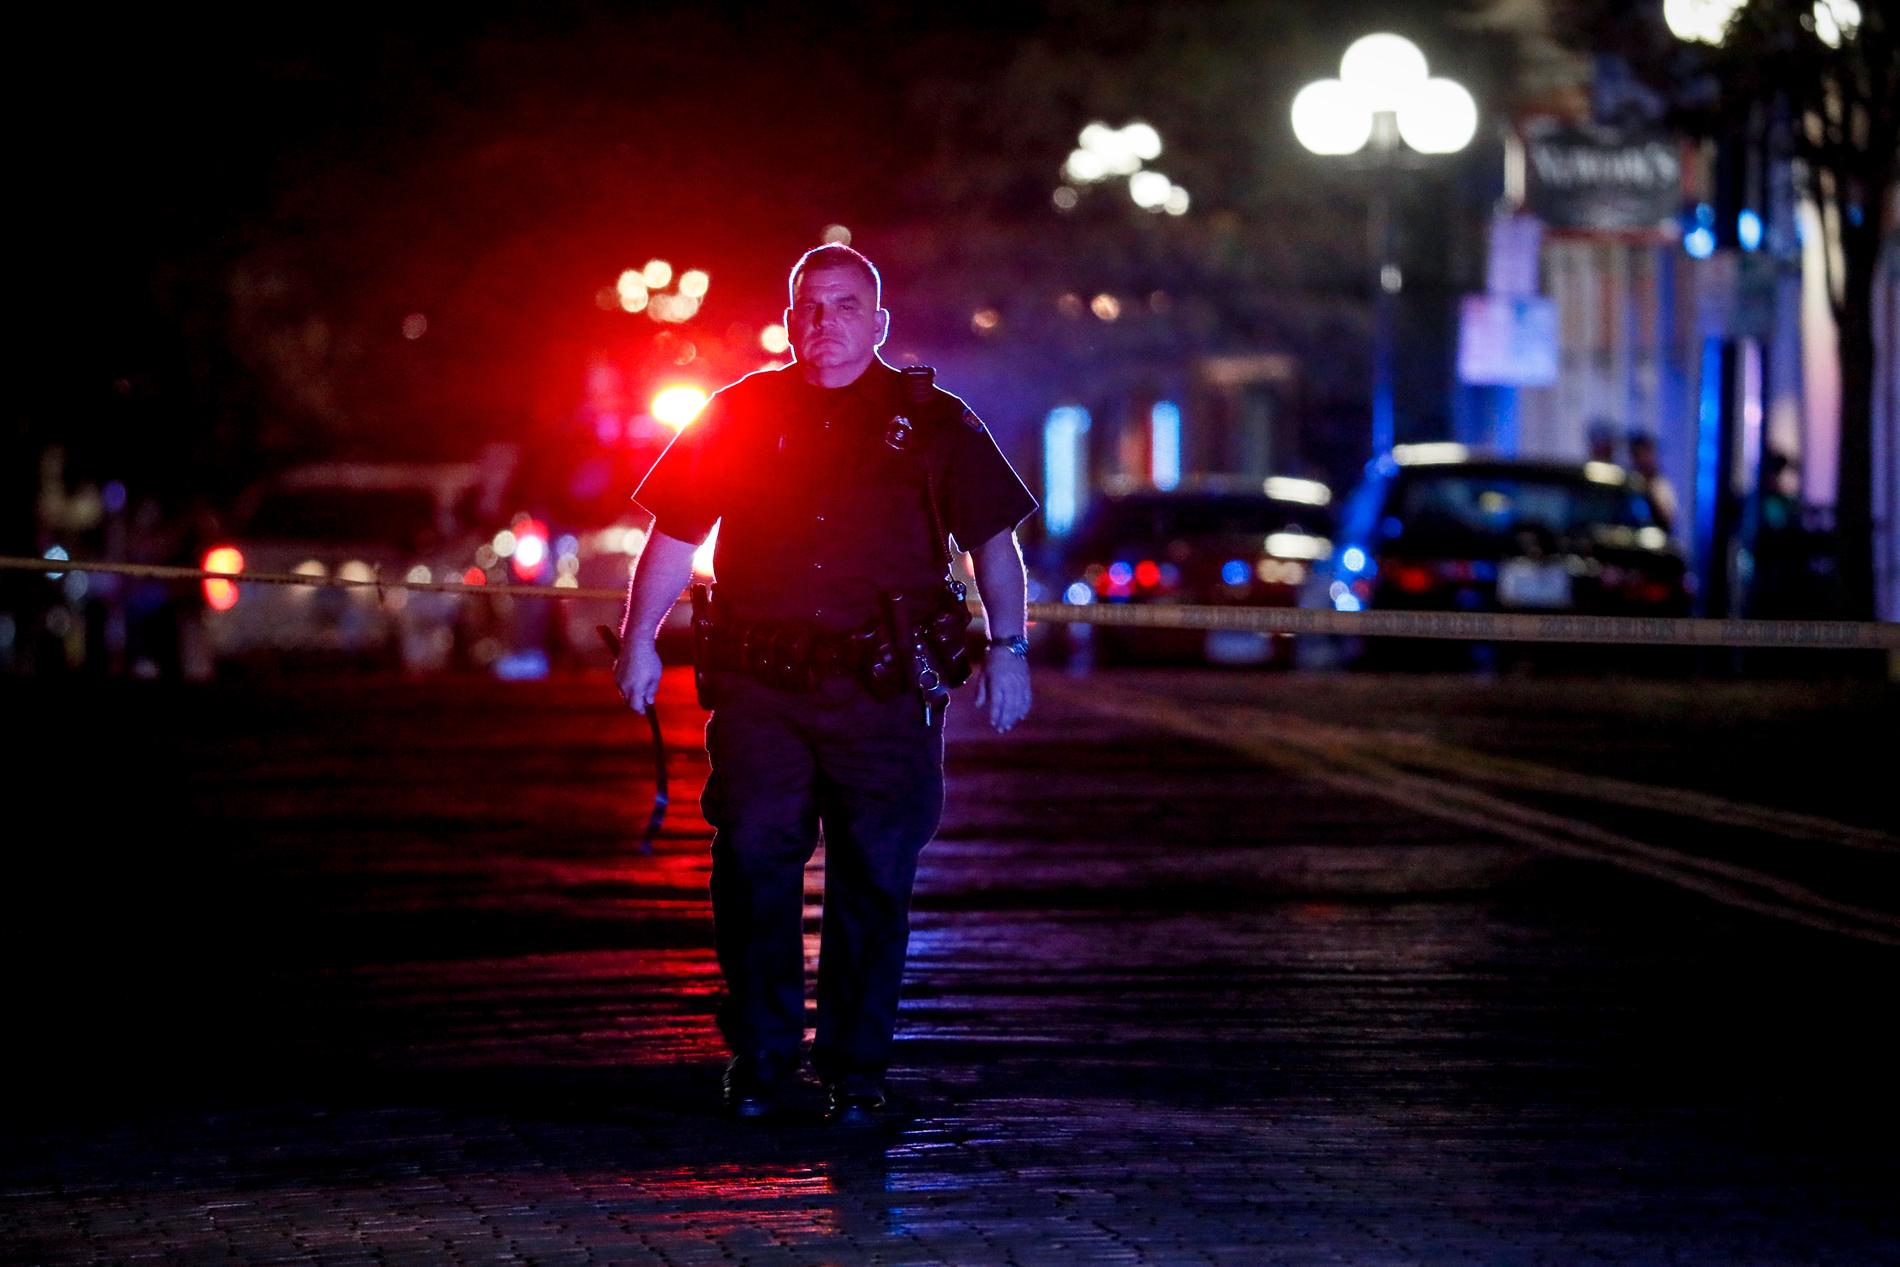 Tio personer, inklusive skytten, har dödats i ännu en masskjutning i USA.